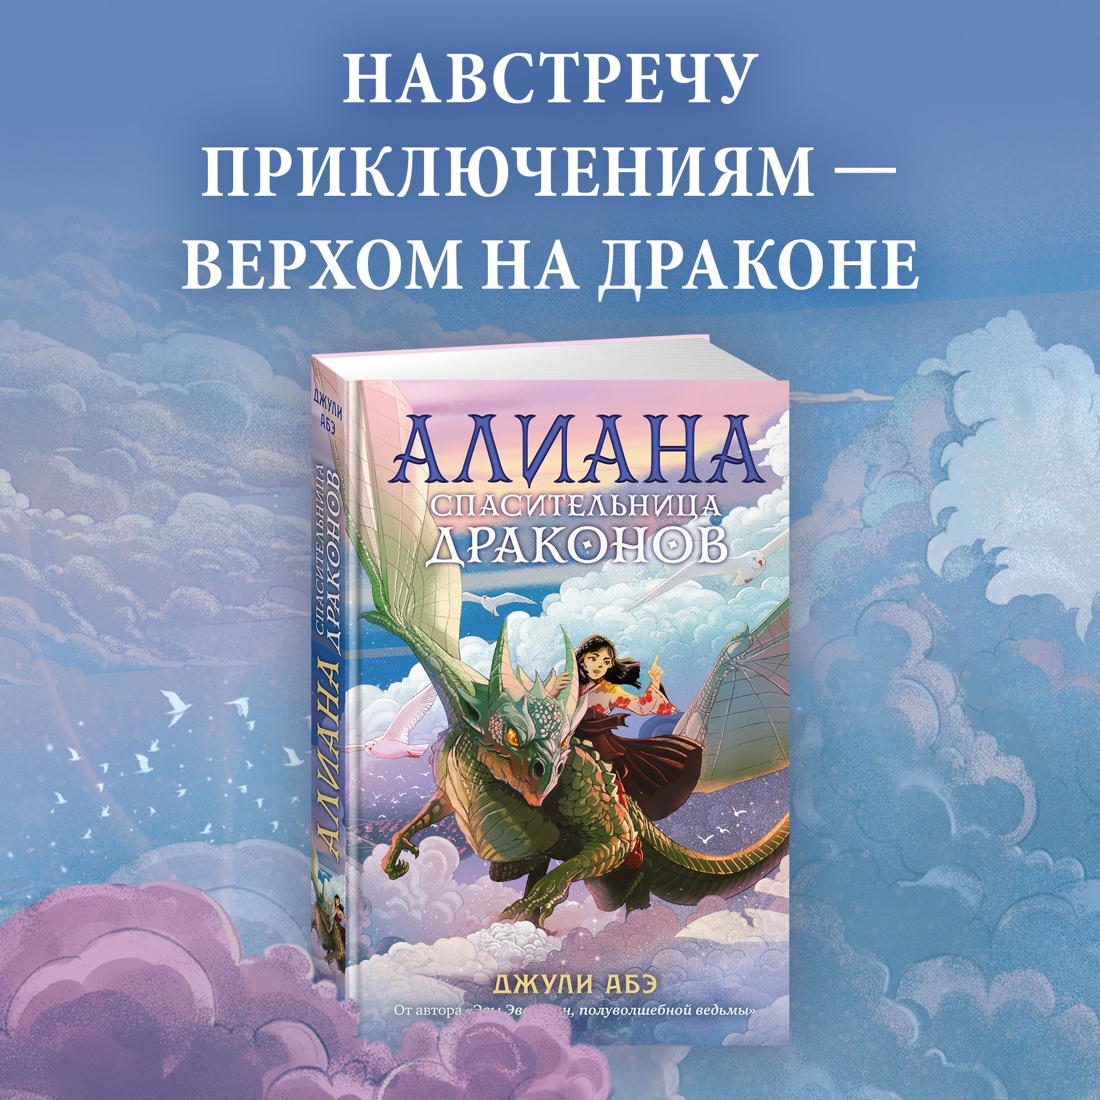 Промо материал к книге "Алиана, спасительница драконов" №0